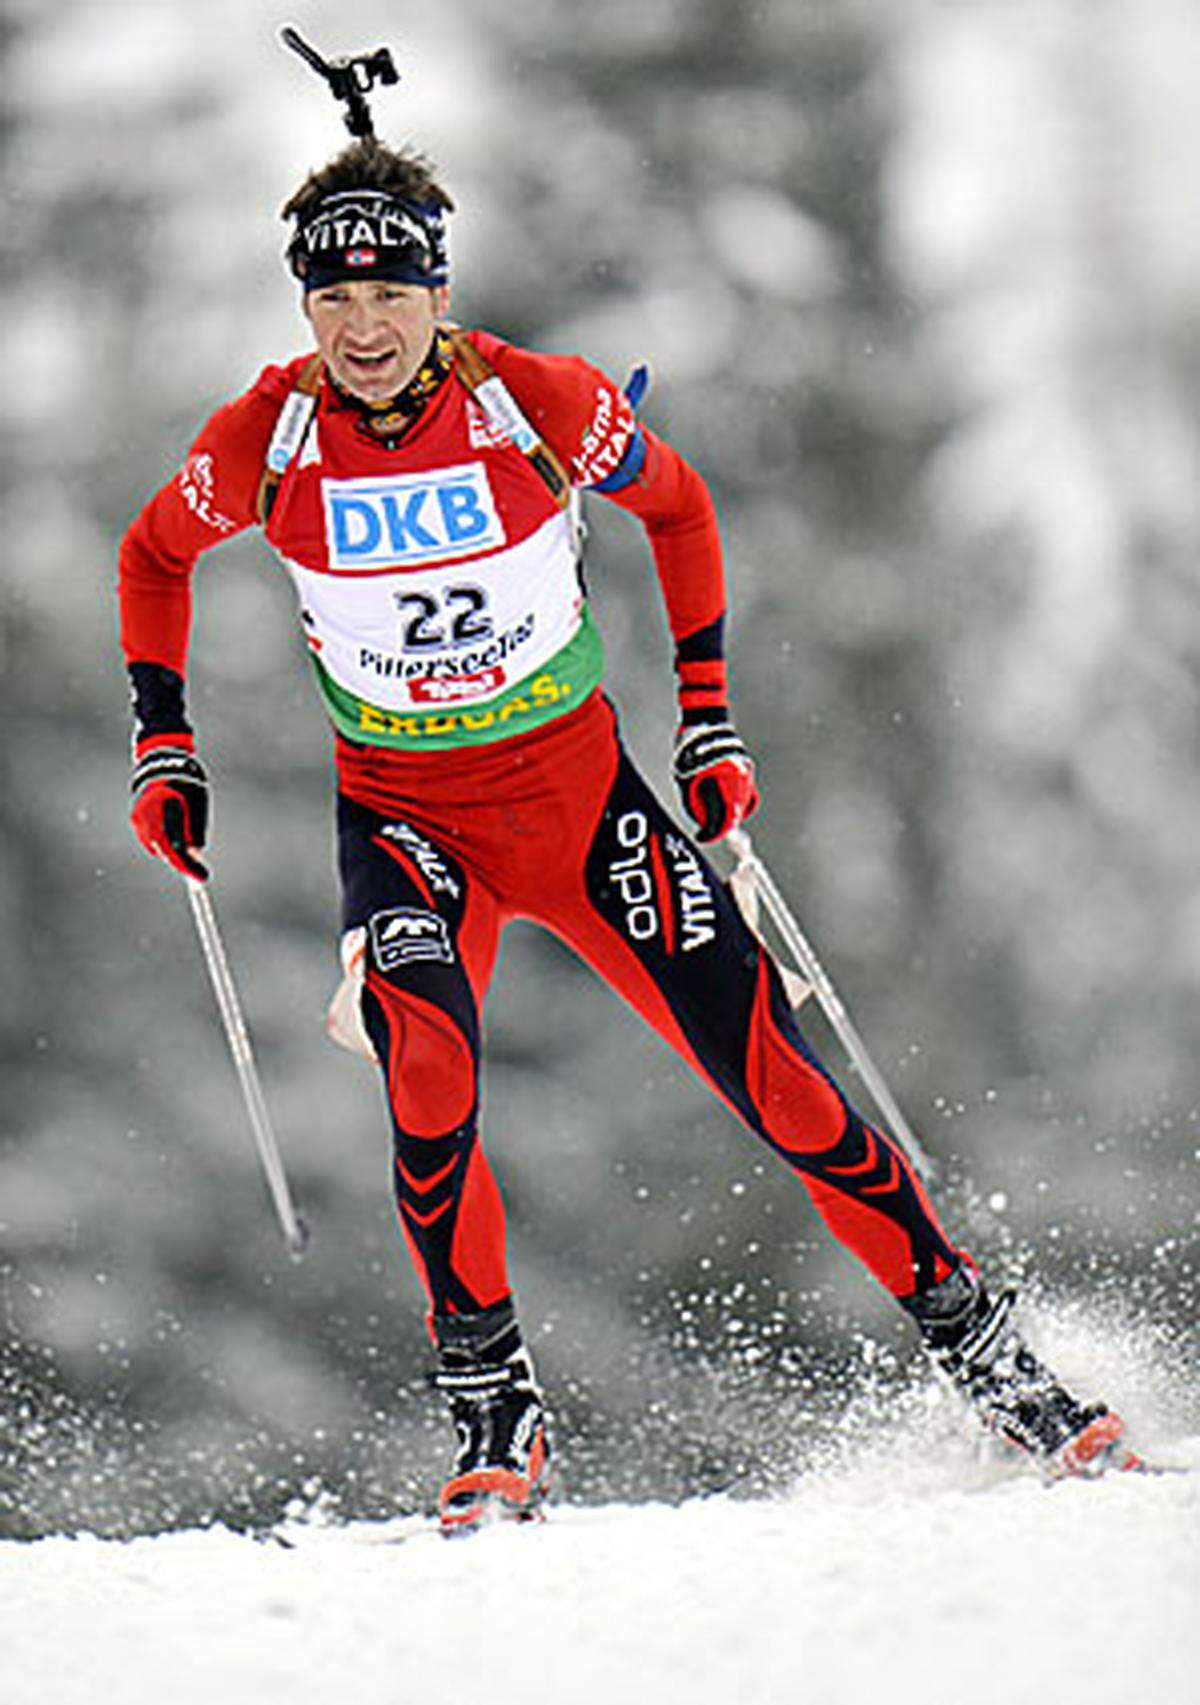 Mit sieben Siegen schaffte es Björndalen, der von sich selbst sagt "ein Tag ohne Training ist ein verlorener Tag", im selben Jahr, zum fünften Mal den Gesamtweltcup zu gewinnen.